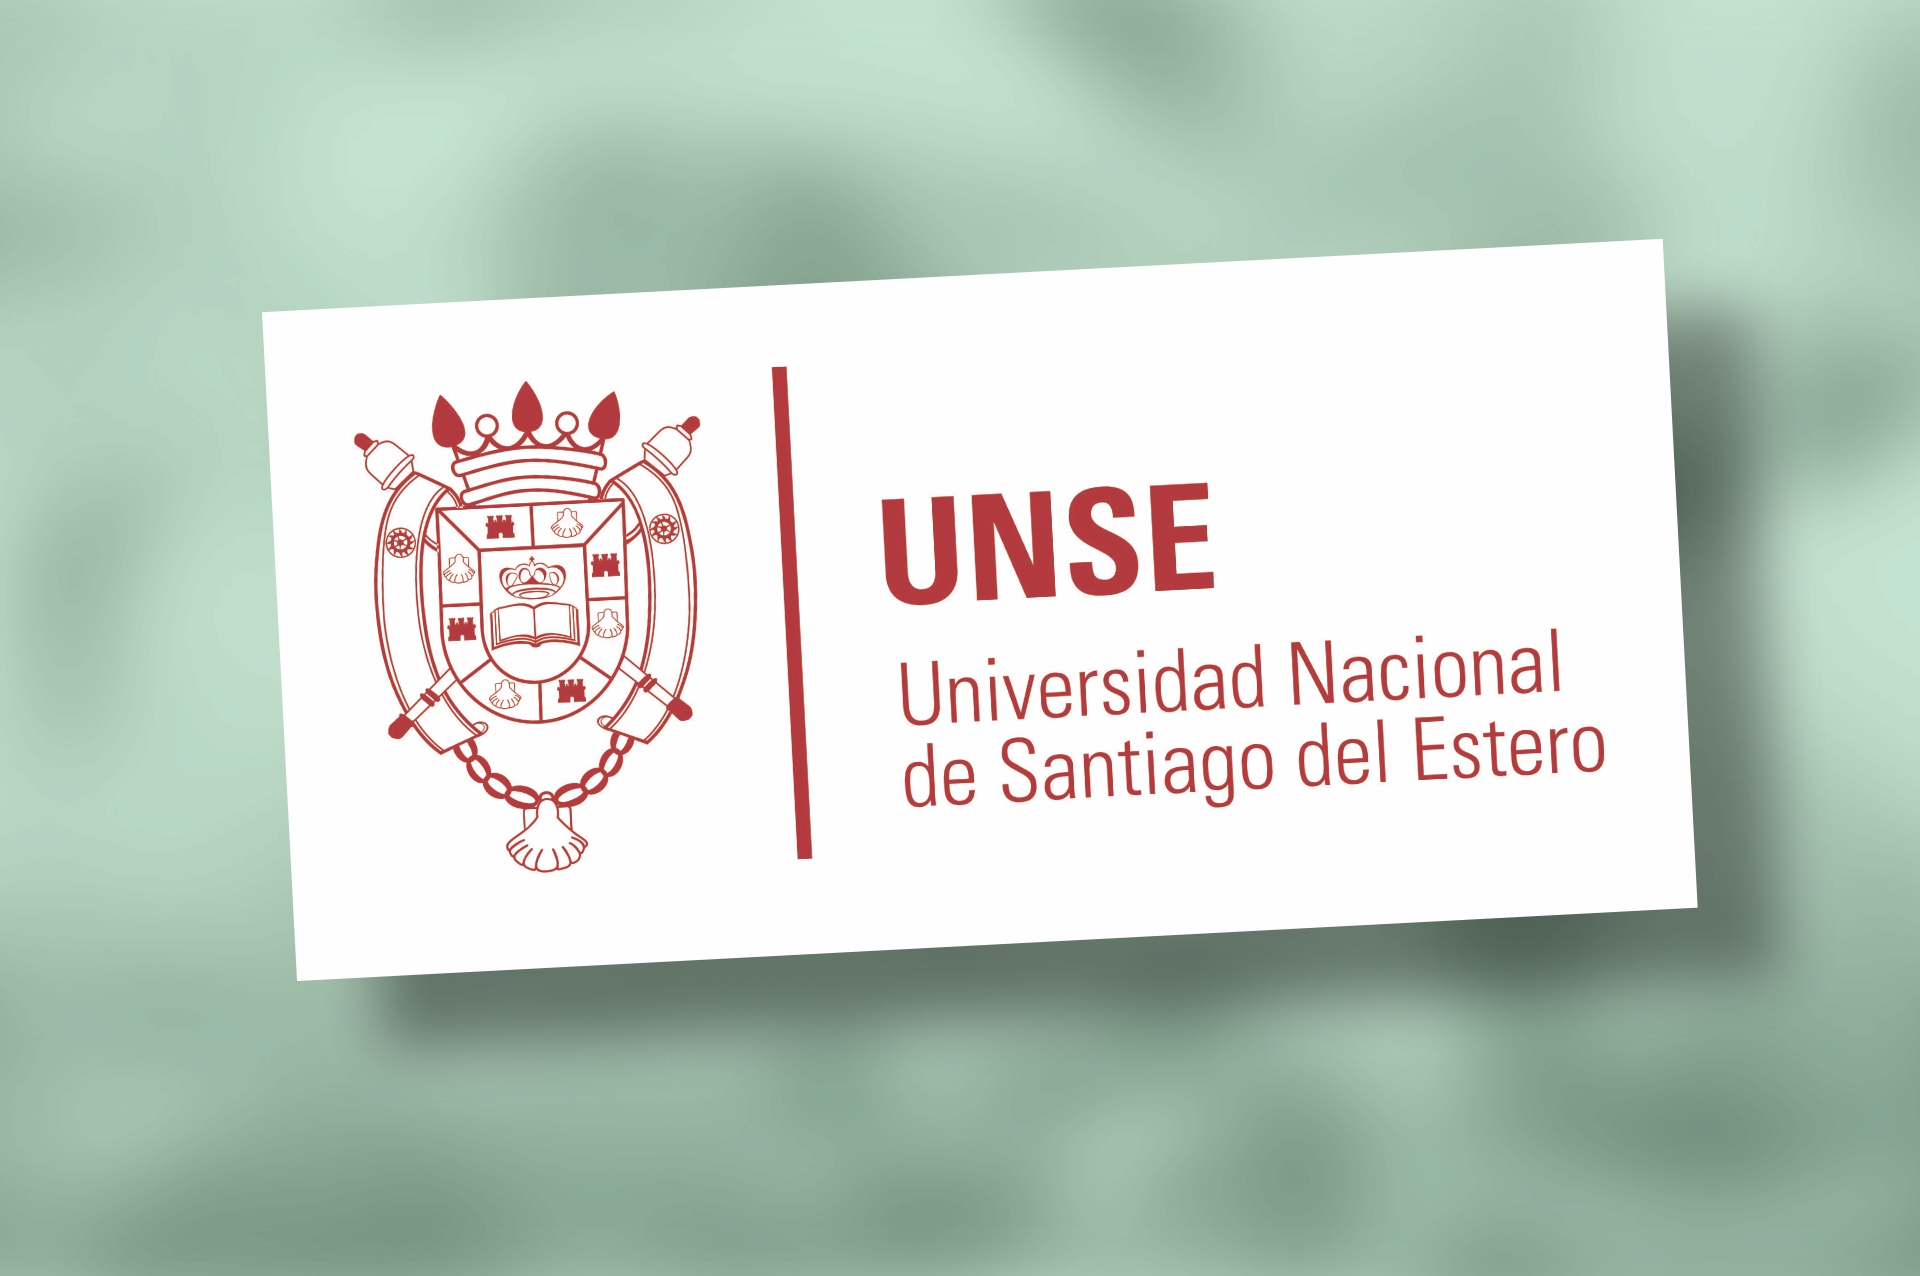 Seminario-taller “Emprender con Ciencia” / UNSE - INBIOAR SAS